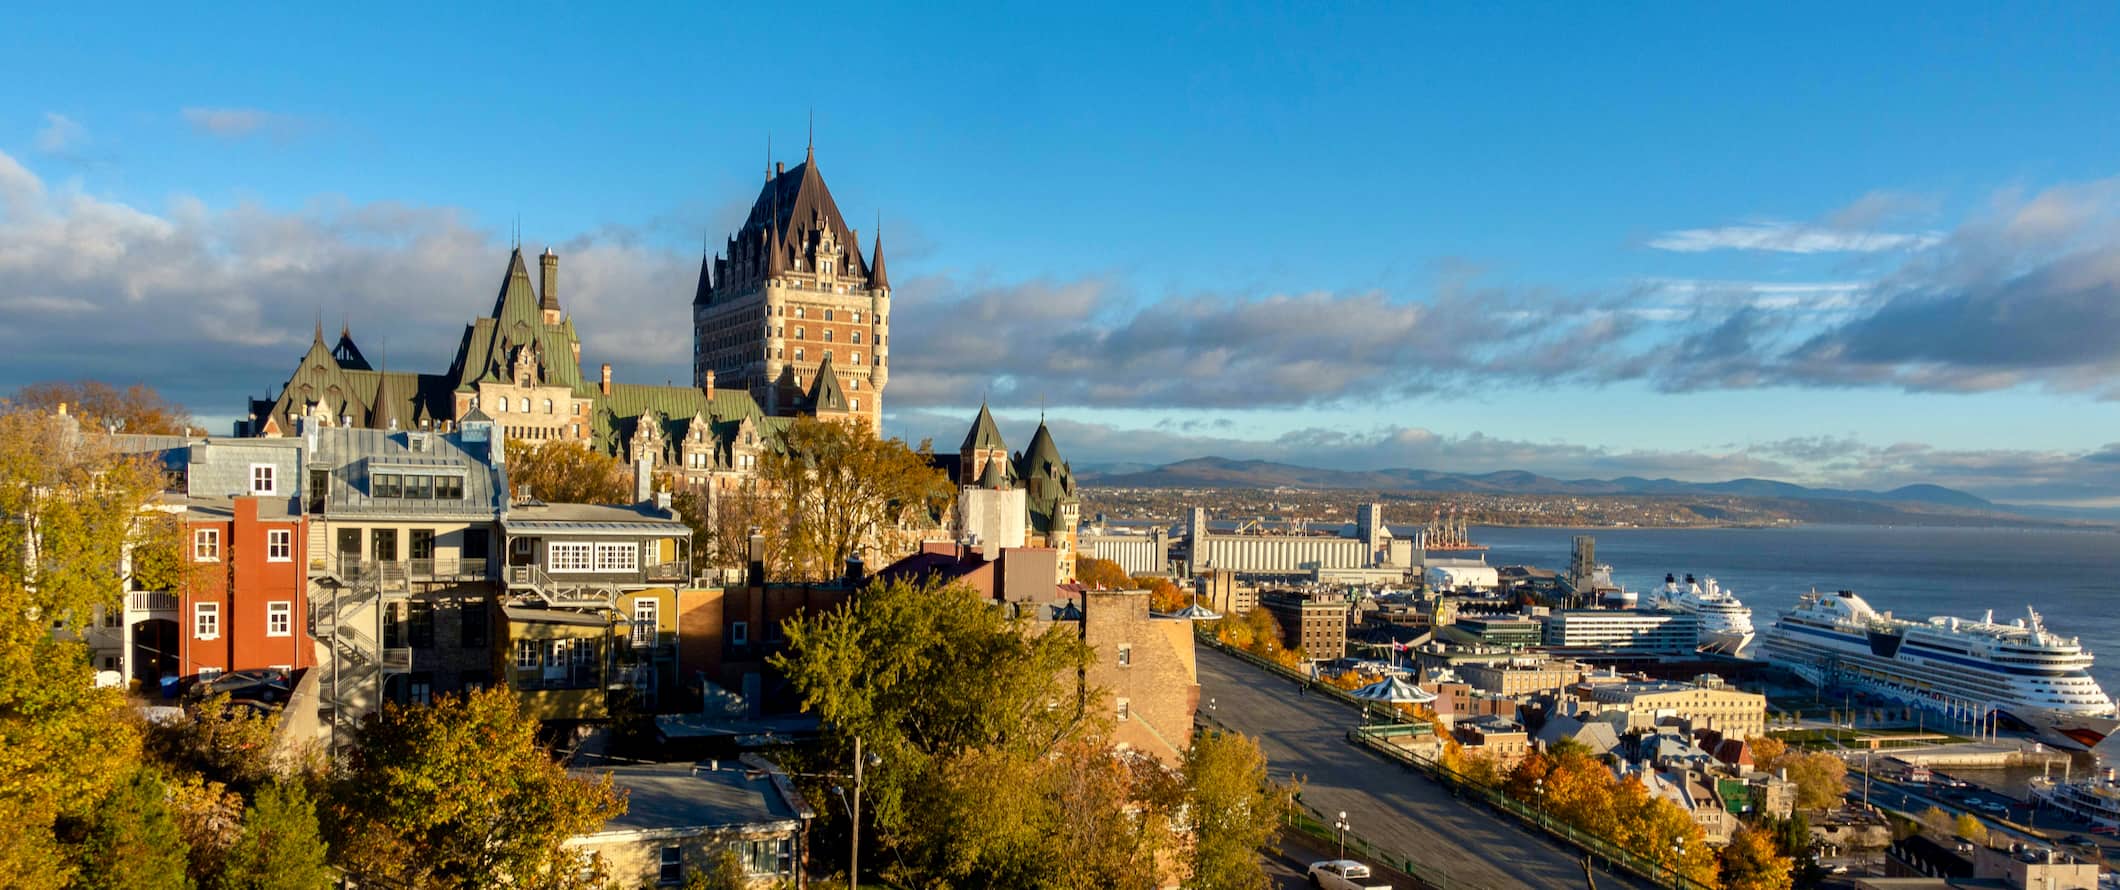 Vista do horizonte da cidade de Quebec, Canadá, com um castelo histórico correndo à distância